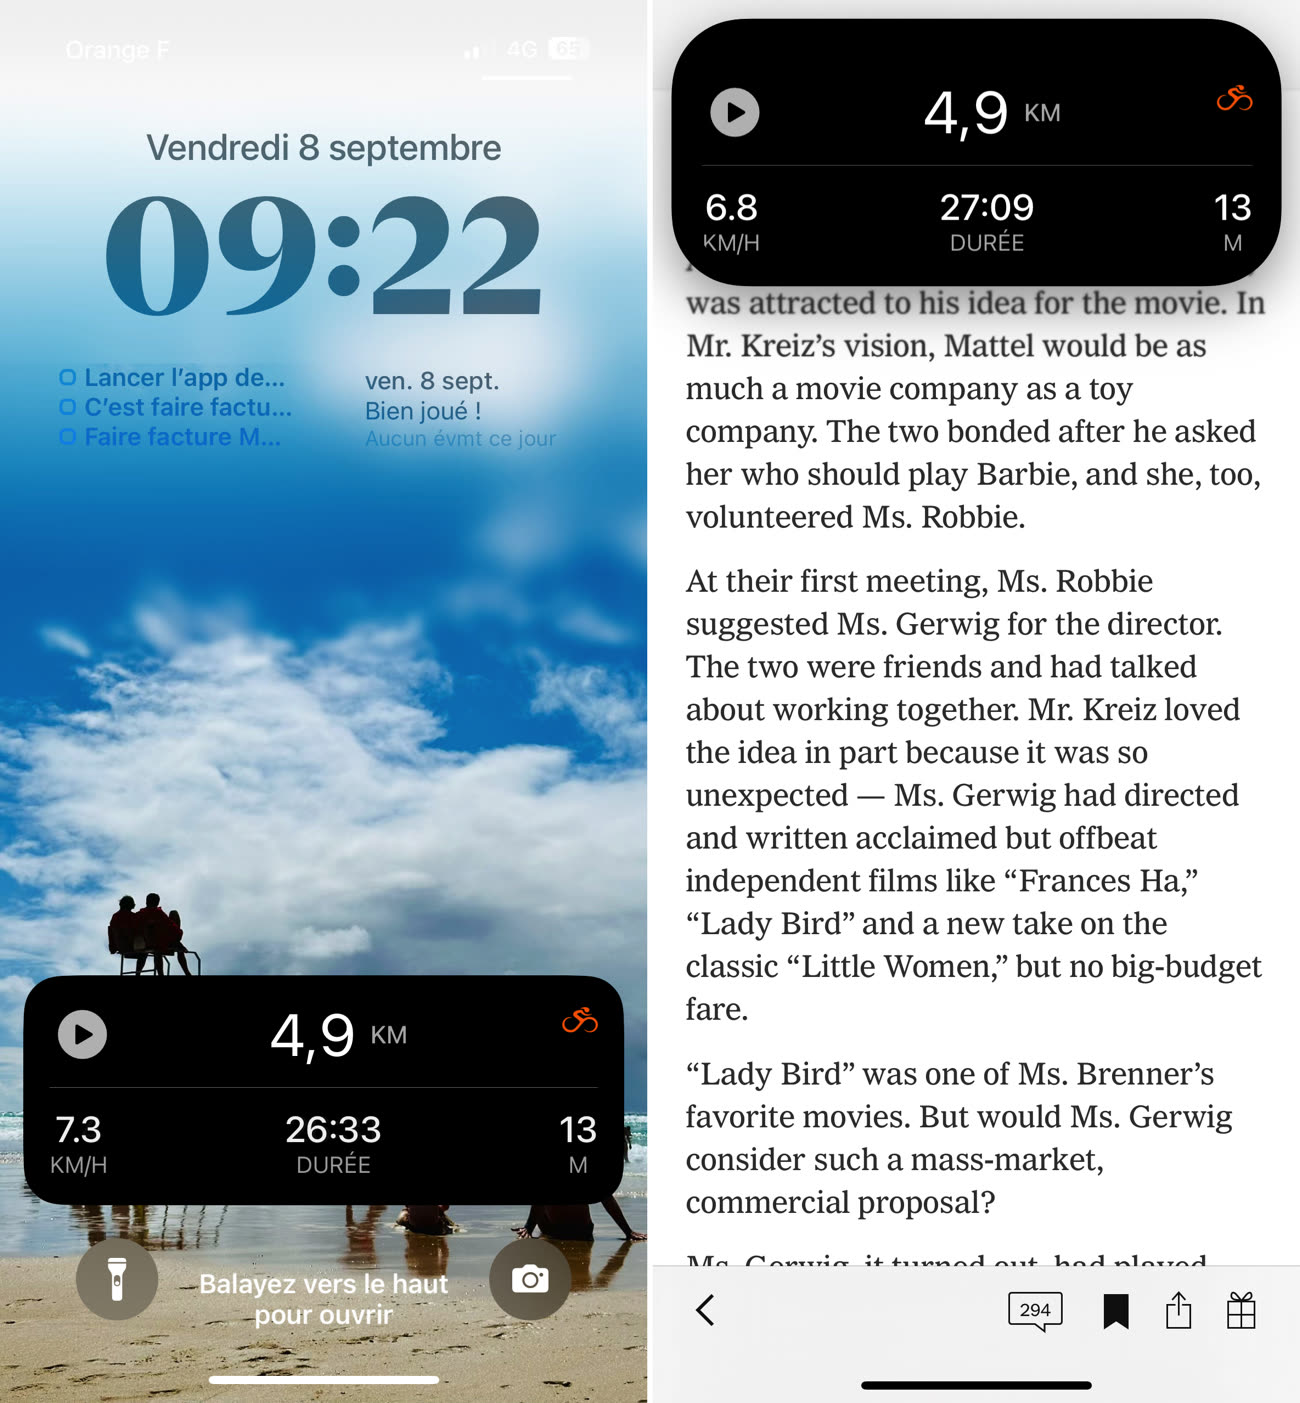 Compteur de vitesse GPS intell dans l'App Store